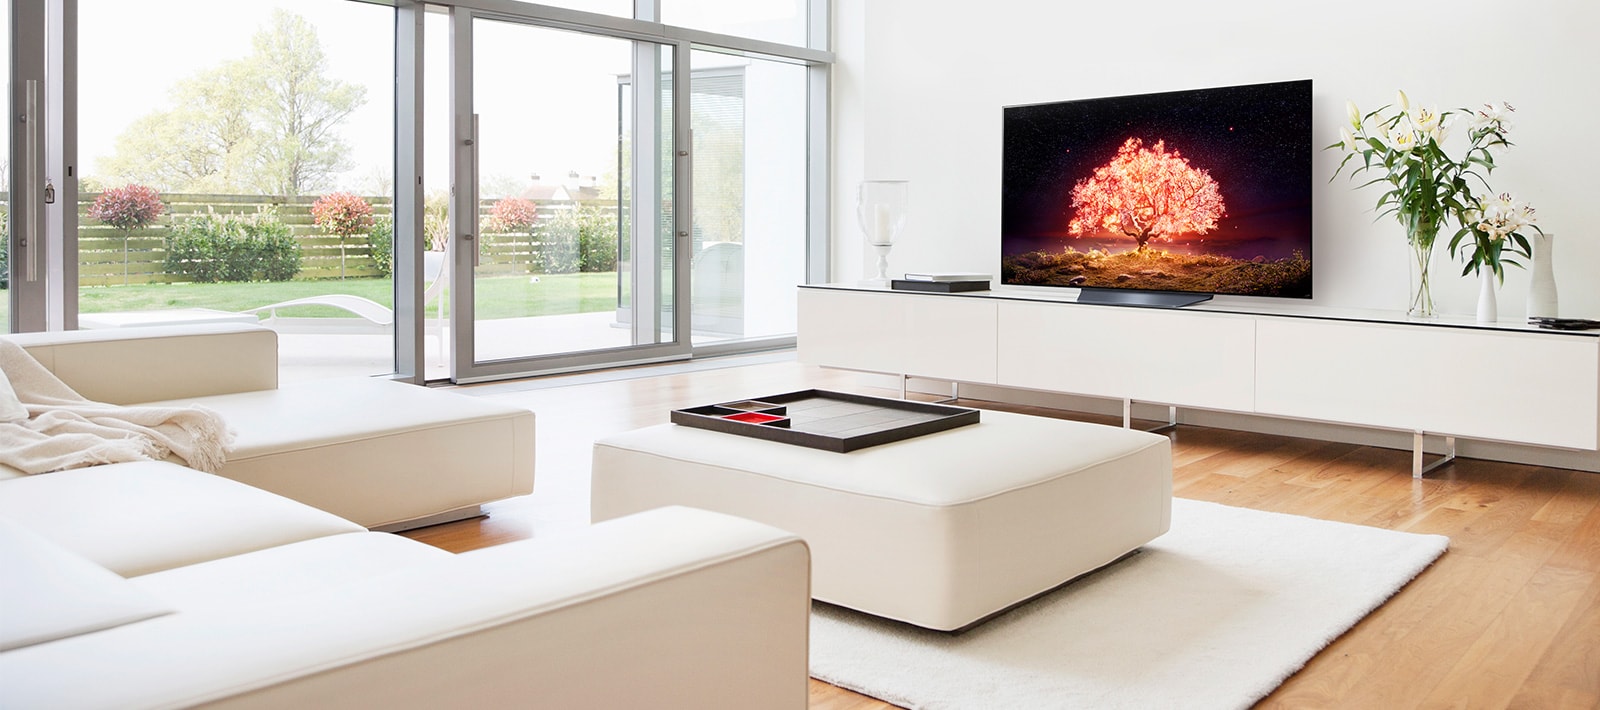 A TV-n egy lila fényt kibocsátó fa látható luxus minőségű, otthoni környezetben